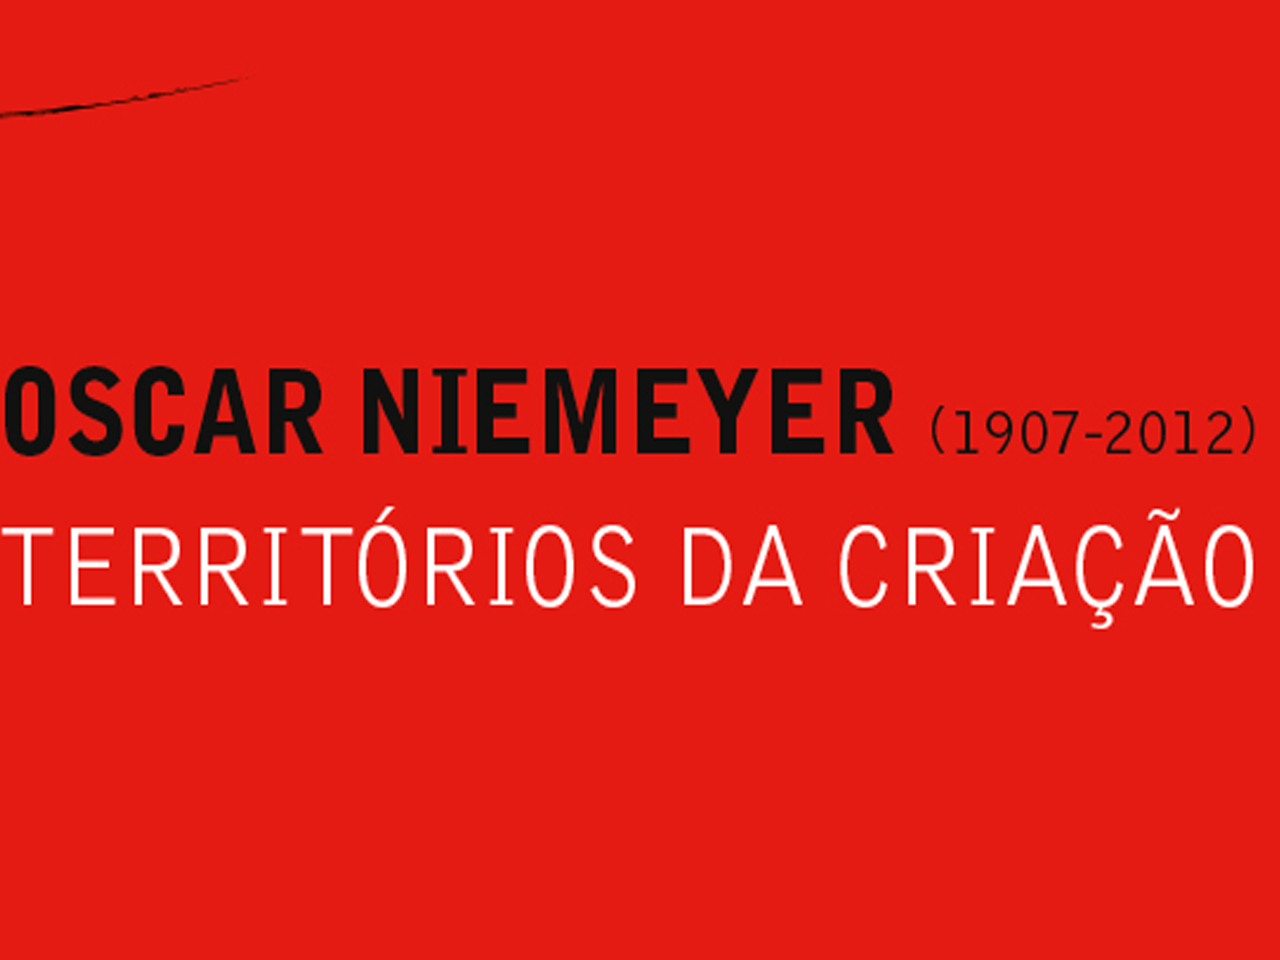 Exposição retrata vida e obra de Oscar Niemayer